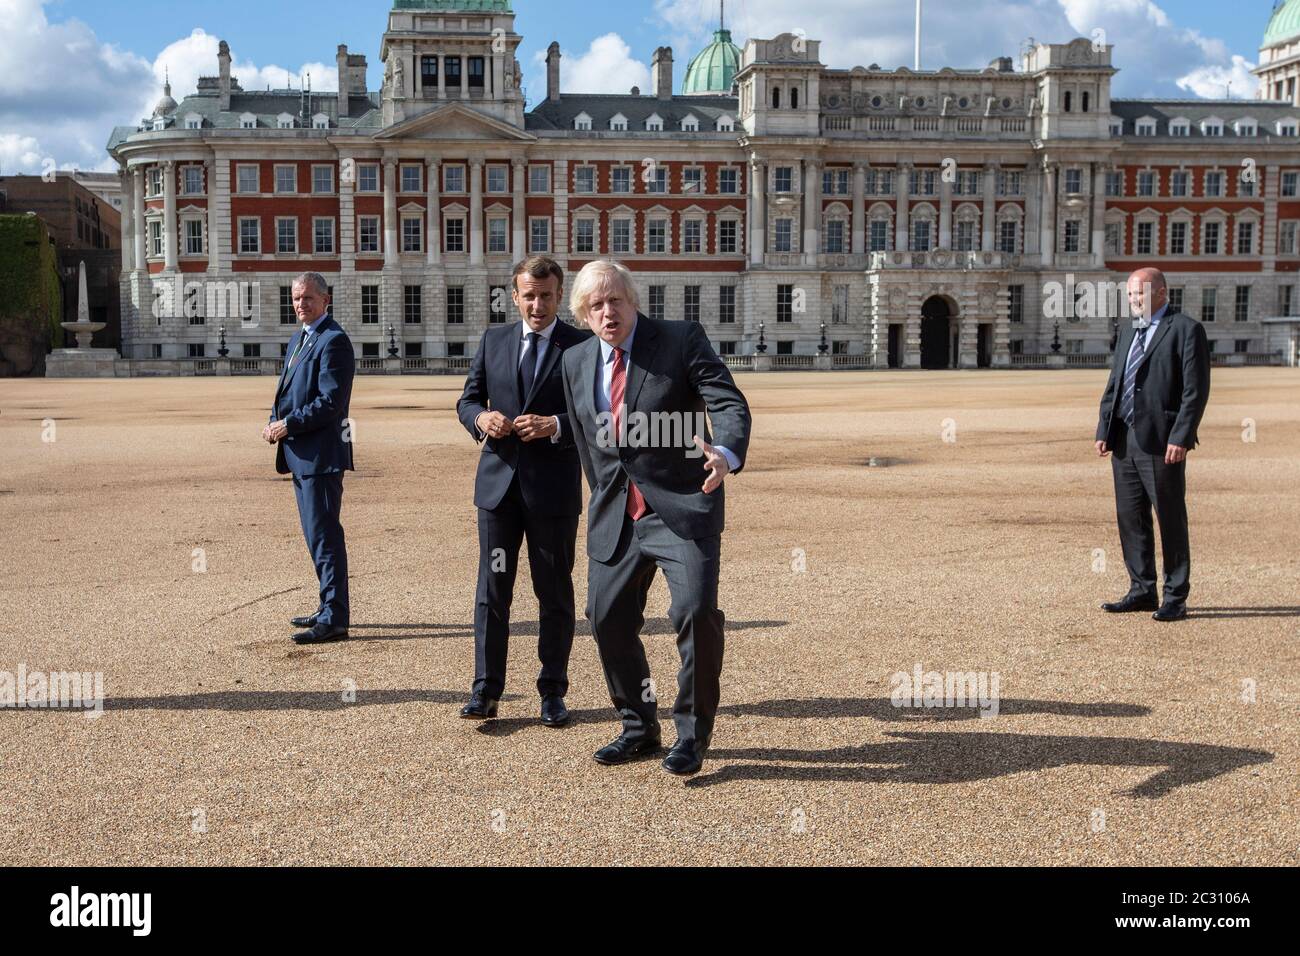 Il primo ministro Boris Johnson (centro a destra) e il presidente francese Emmanuel Macron osservano un sorvolo delle frecce rosse e del loro equivalente francese, la Patrouille de France, dalla Horse Guards Parade di Londra durante la sua visita nel Regno Unito. Foto Stock